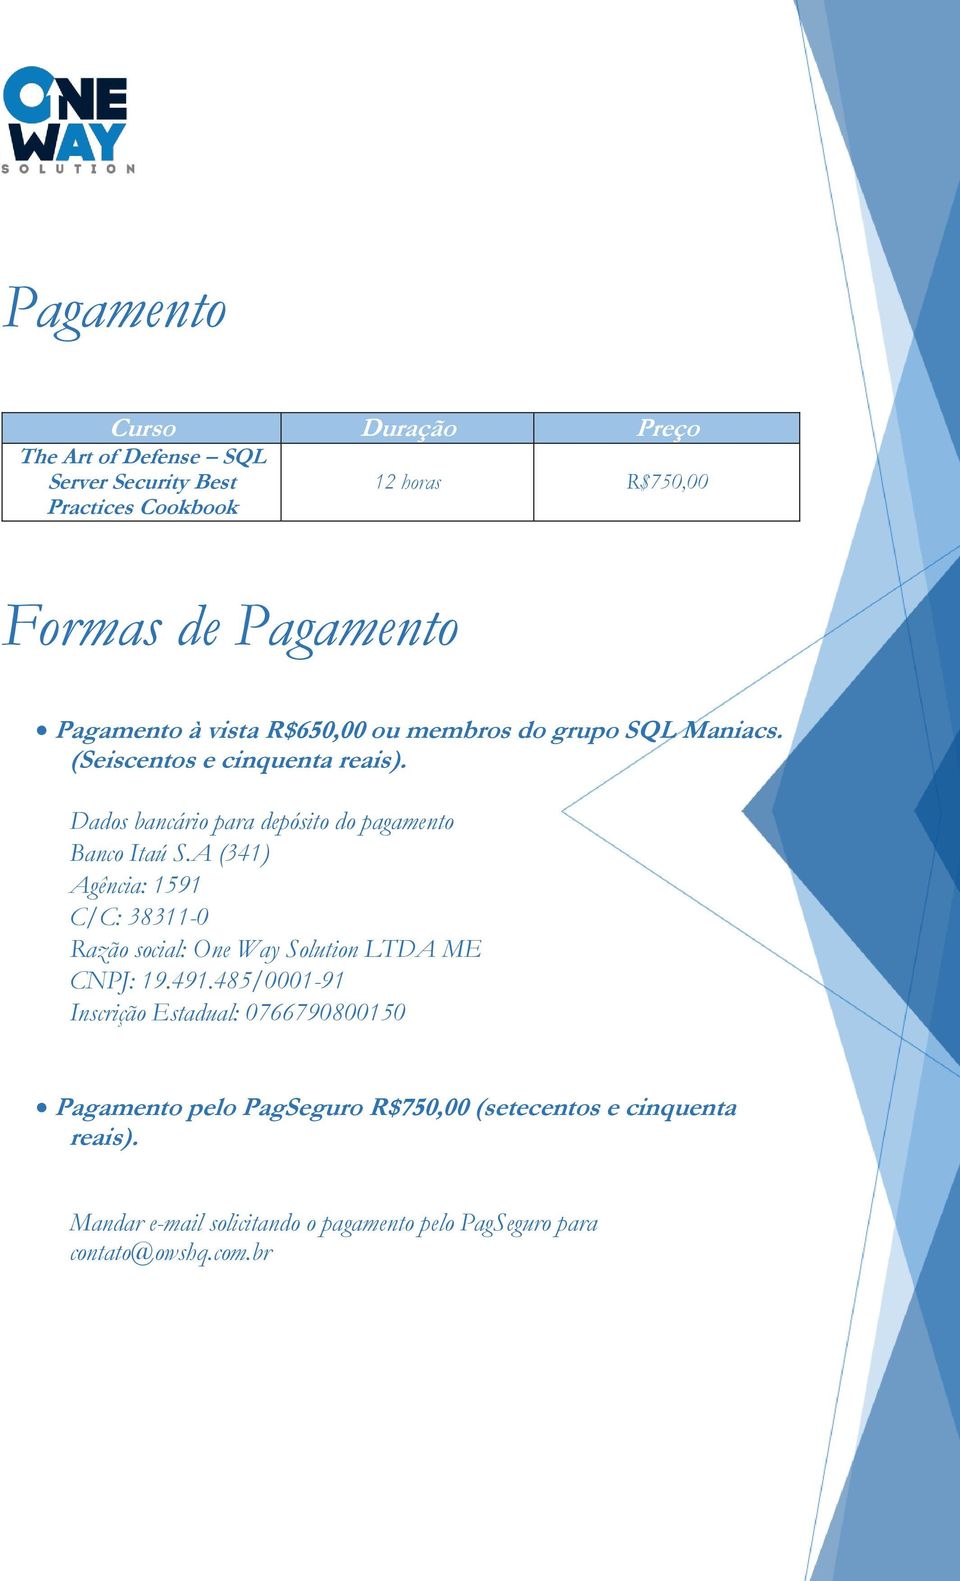 Dados bancário para depósito do pagamento Banco Itaú S.A (341) Agência: 1591 C/C: 38311-0 Razão social: One Way Solution LTDA ME CNPJ: 19.